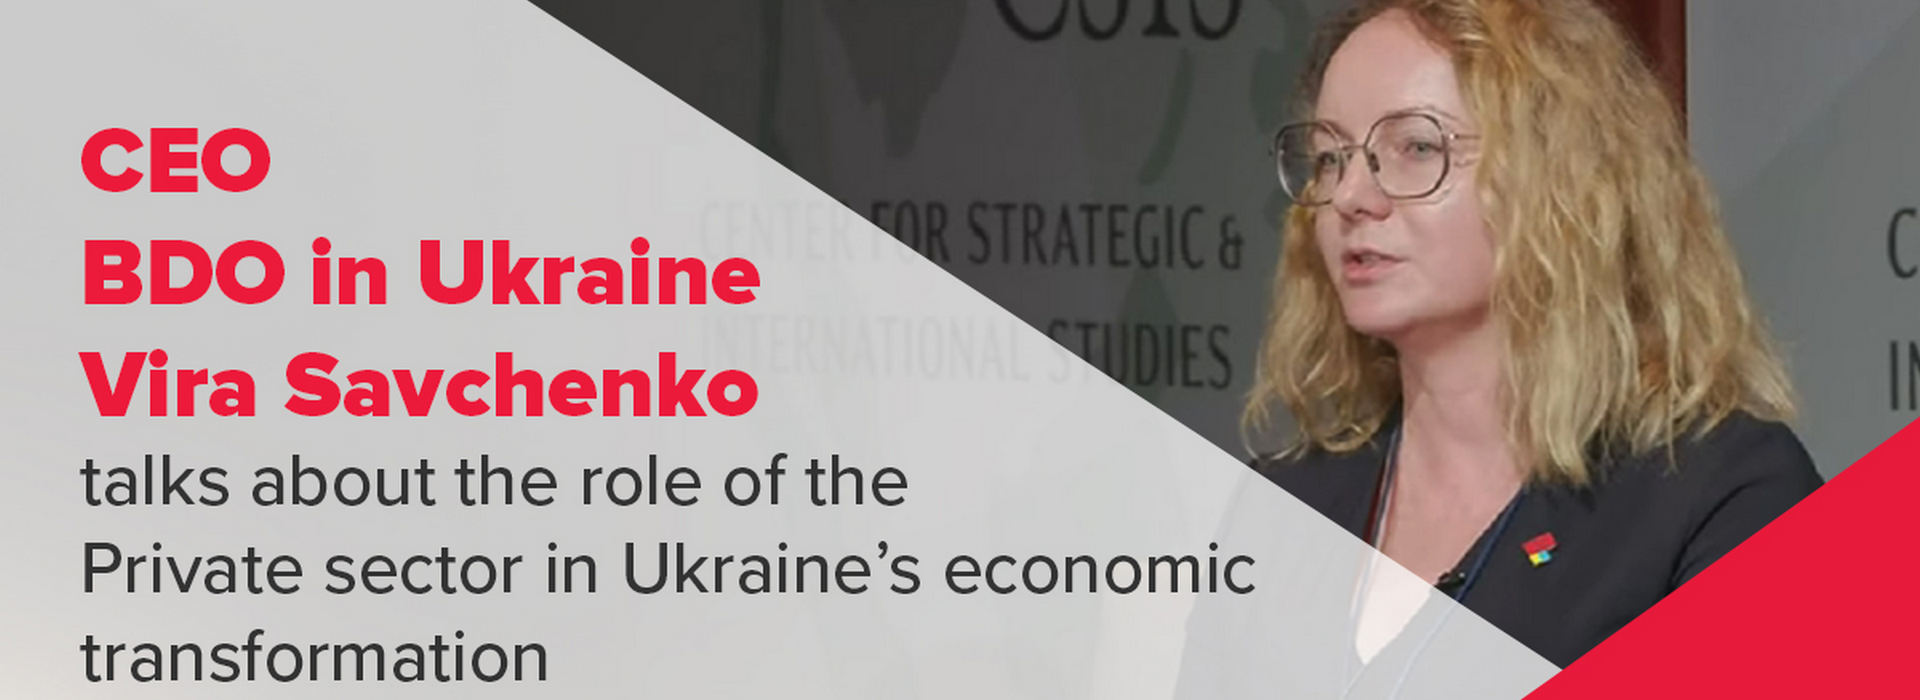 CEO BDO in Ukraine Vira Savchenko Talks About the Role of the Private Sector in Ukraine’s Economic Transformation